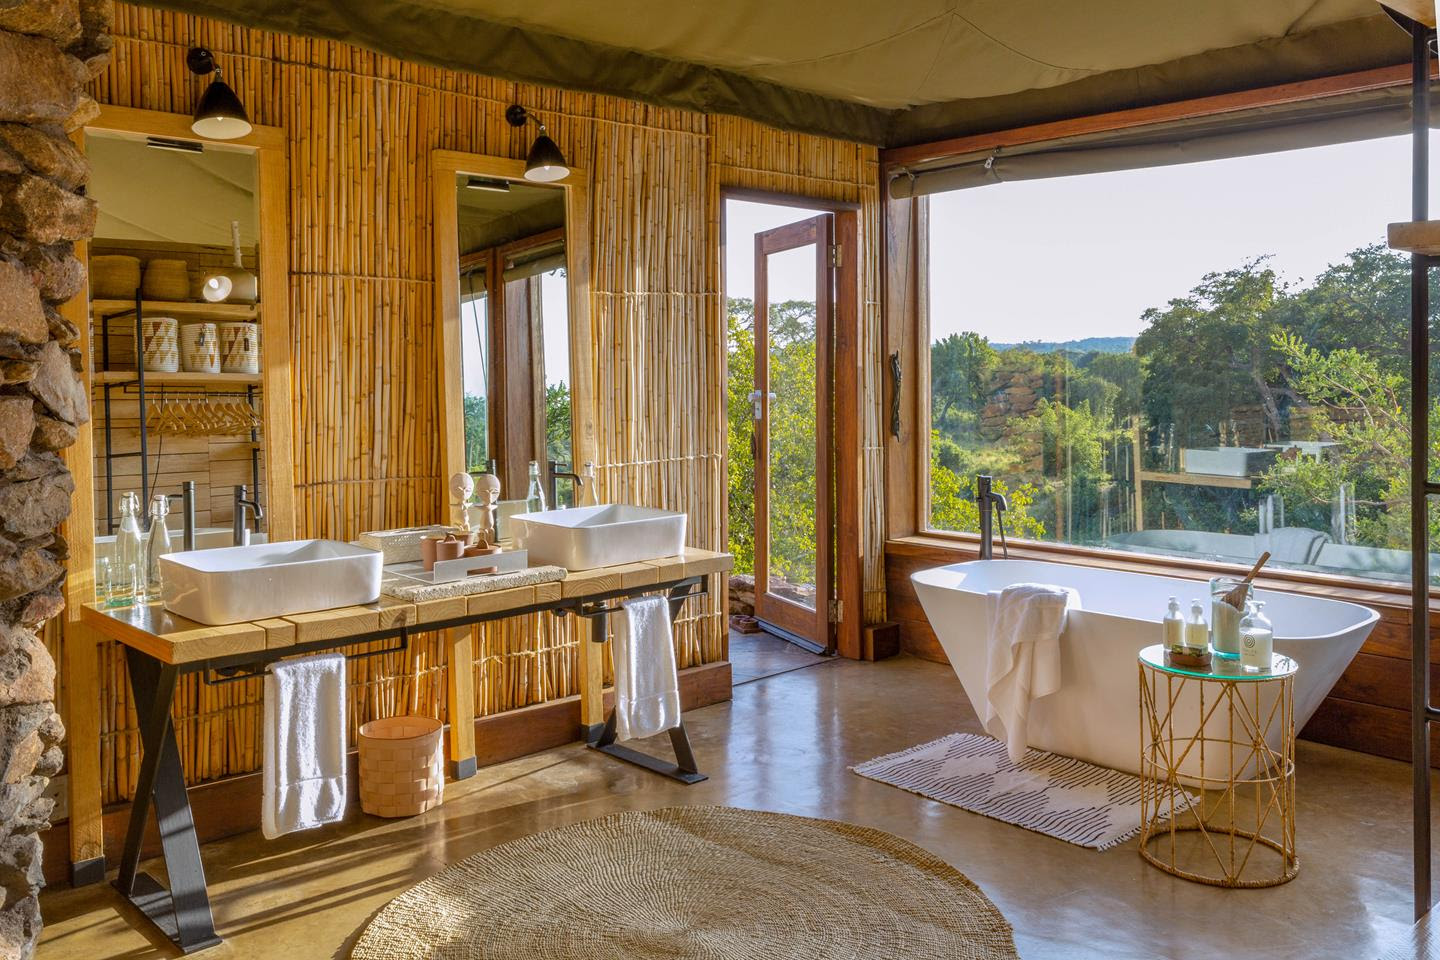 Redesigned en suite bathrooms combine natural materials, locally sourced, with sleek Scandinavian design